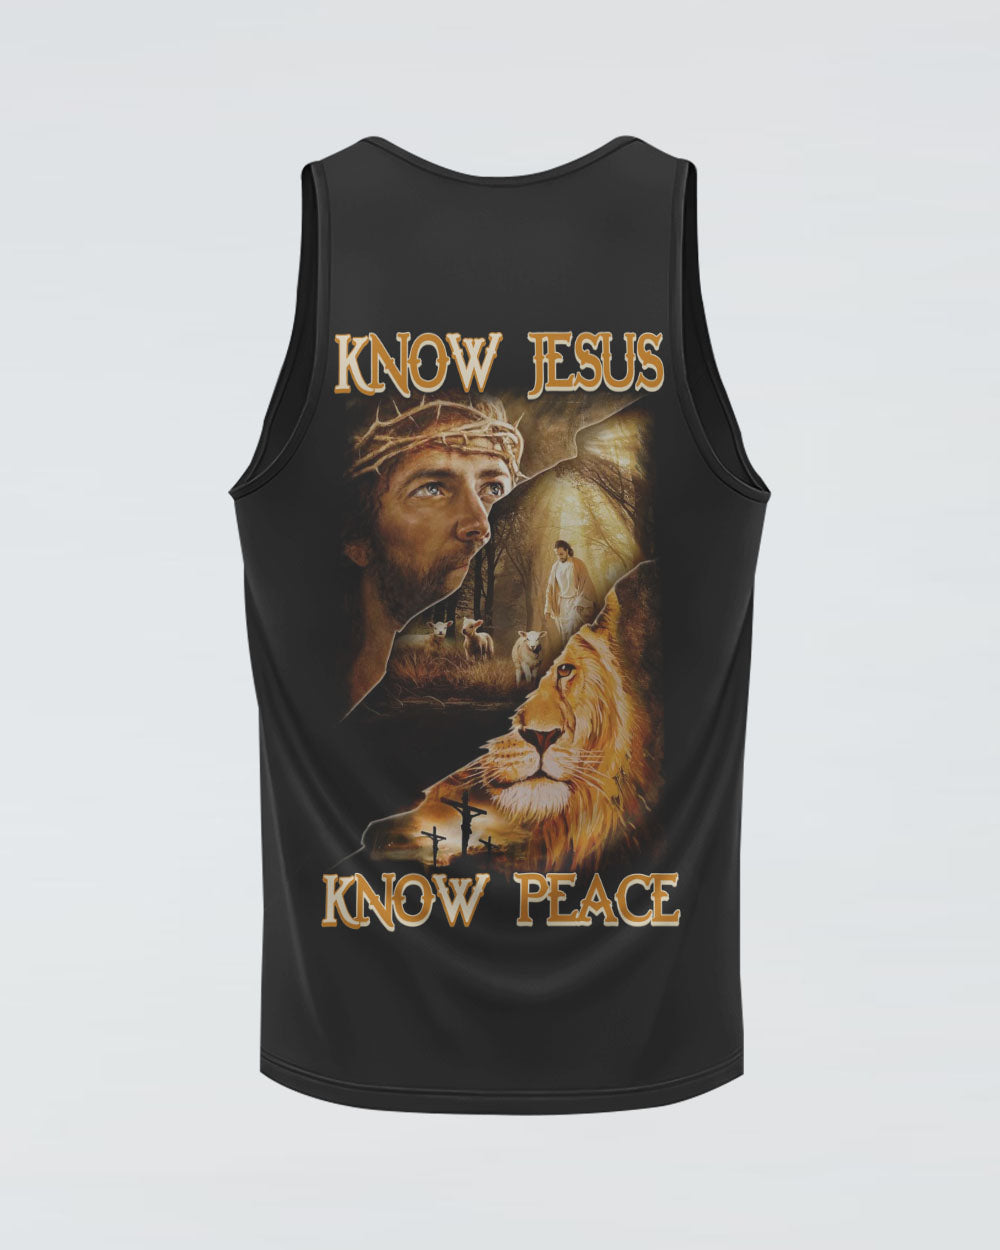 Know Jesus Know Peace Men's Christian Tanks